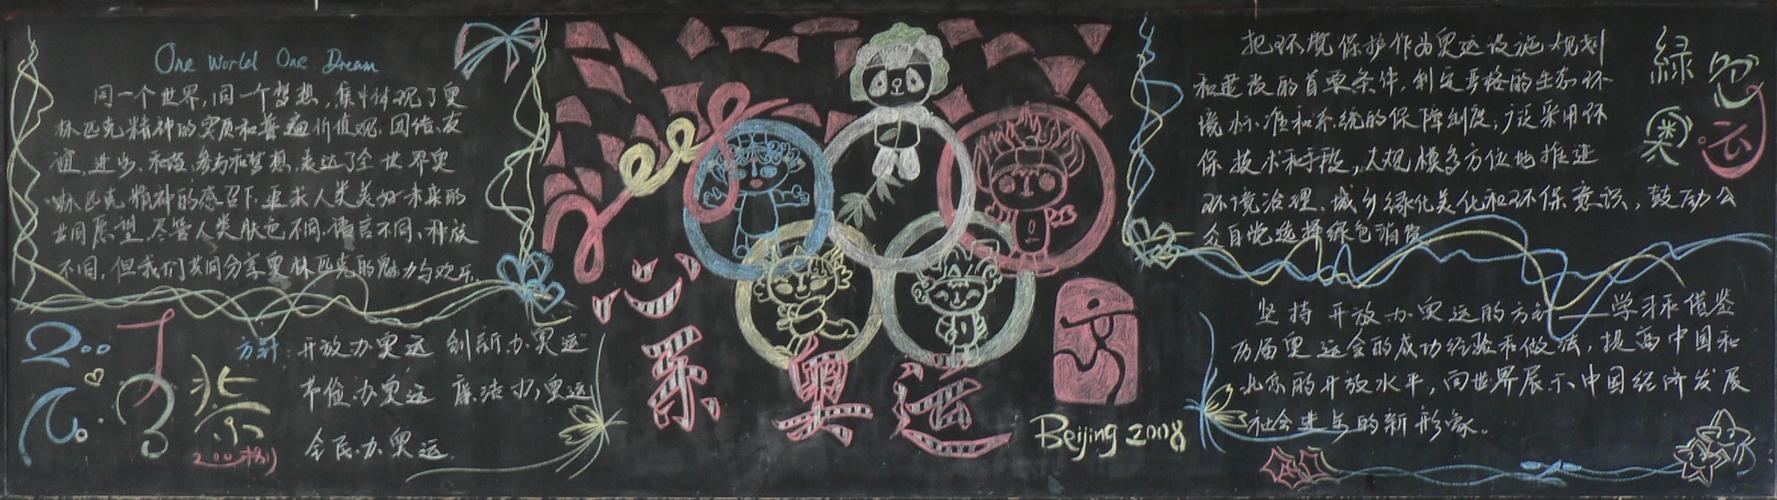 奥运会黑板报图片